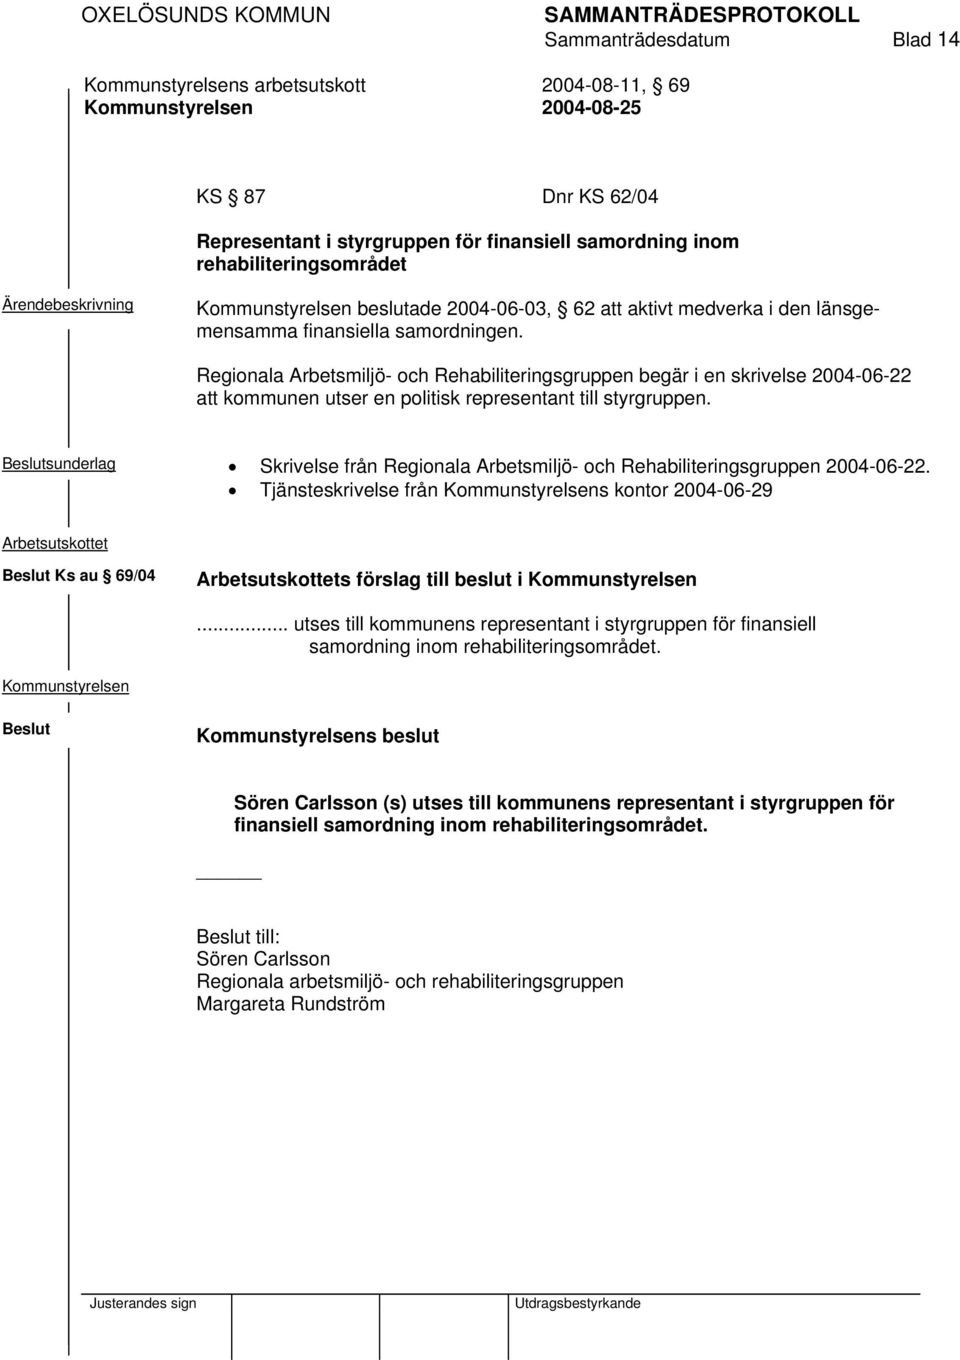 sunderlag Skrivelse från Regionala Arbetsmiljö- och Rehabiliteringsgruppen 2004-06-22. Tjänsteskrivelse från s kontor 2004-06-29 Ks au 69/04 s förslag till beslut i.